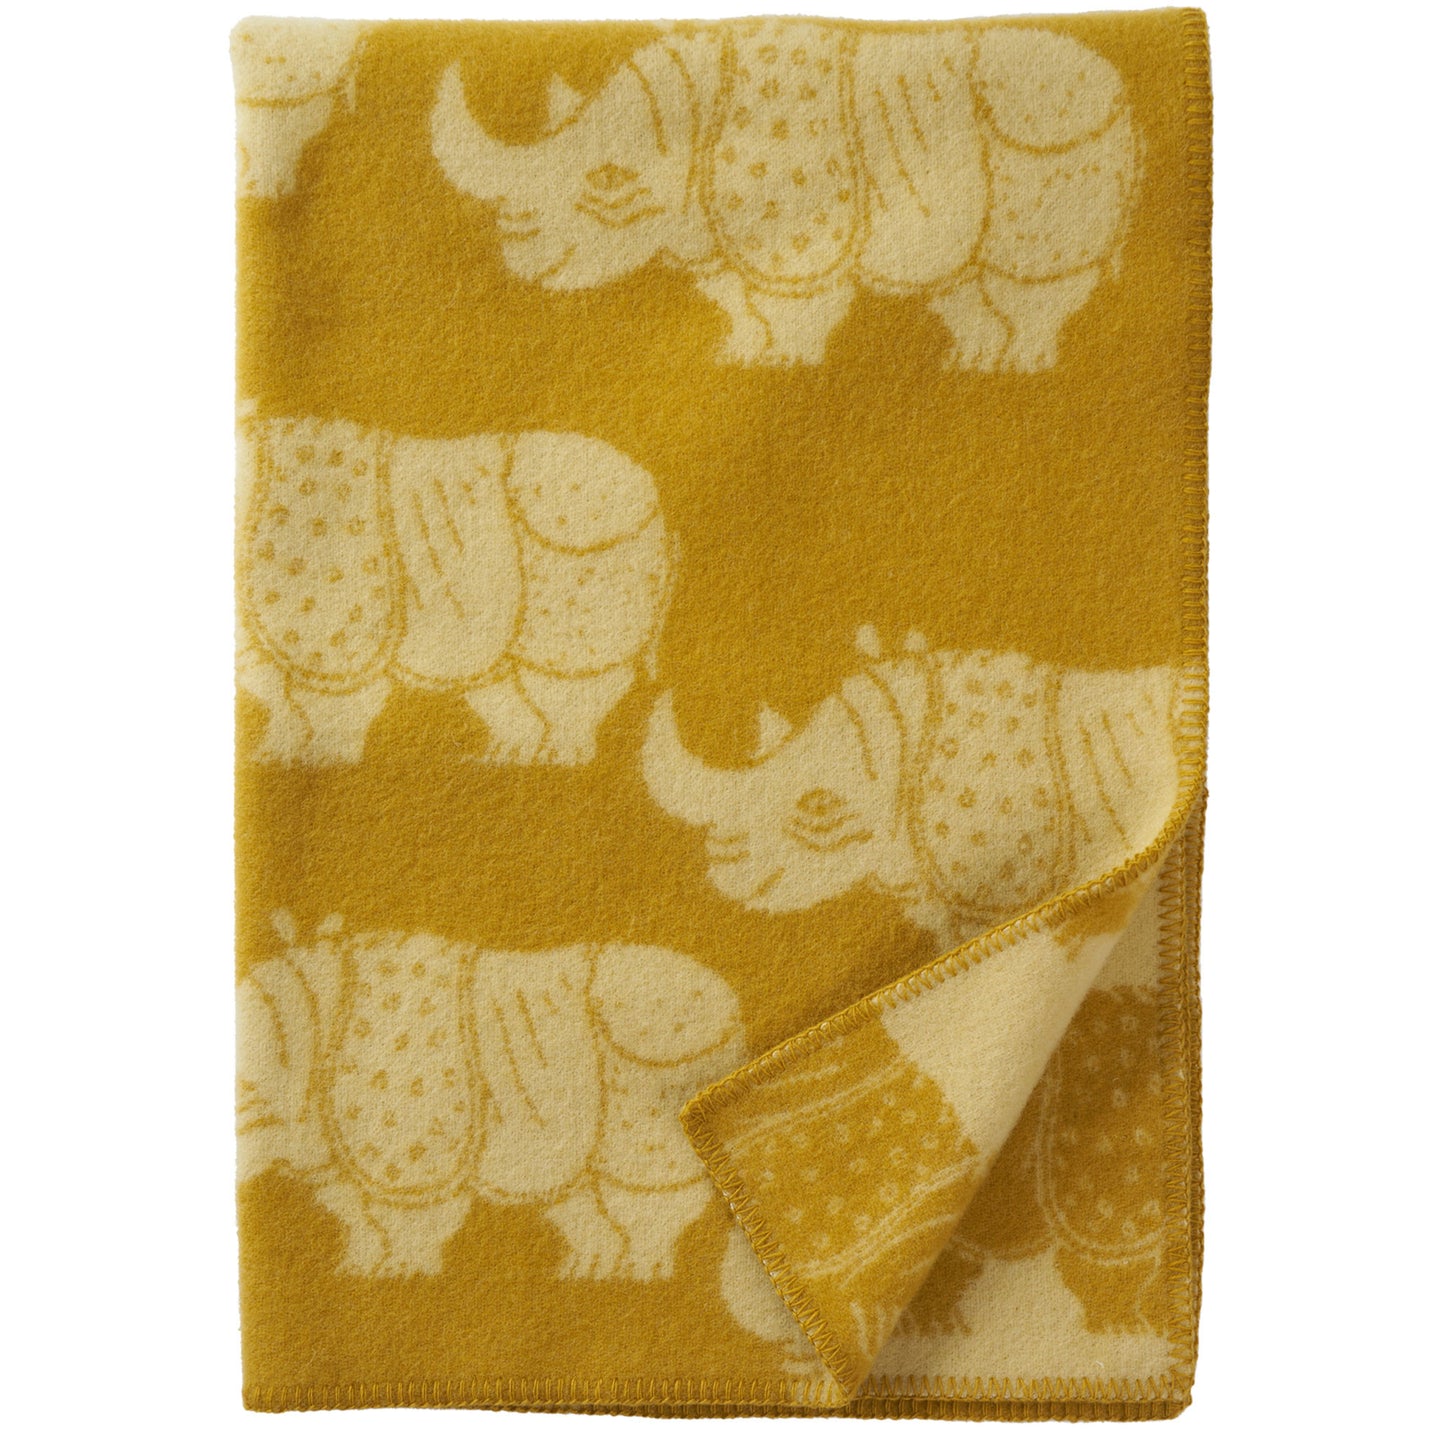 Rhino Yellow Eco Lambswool Blanket 90x130cm